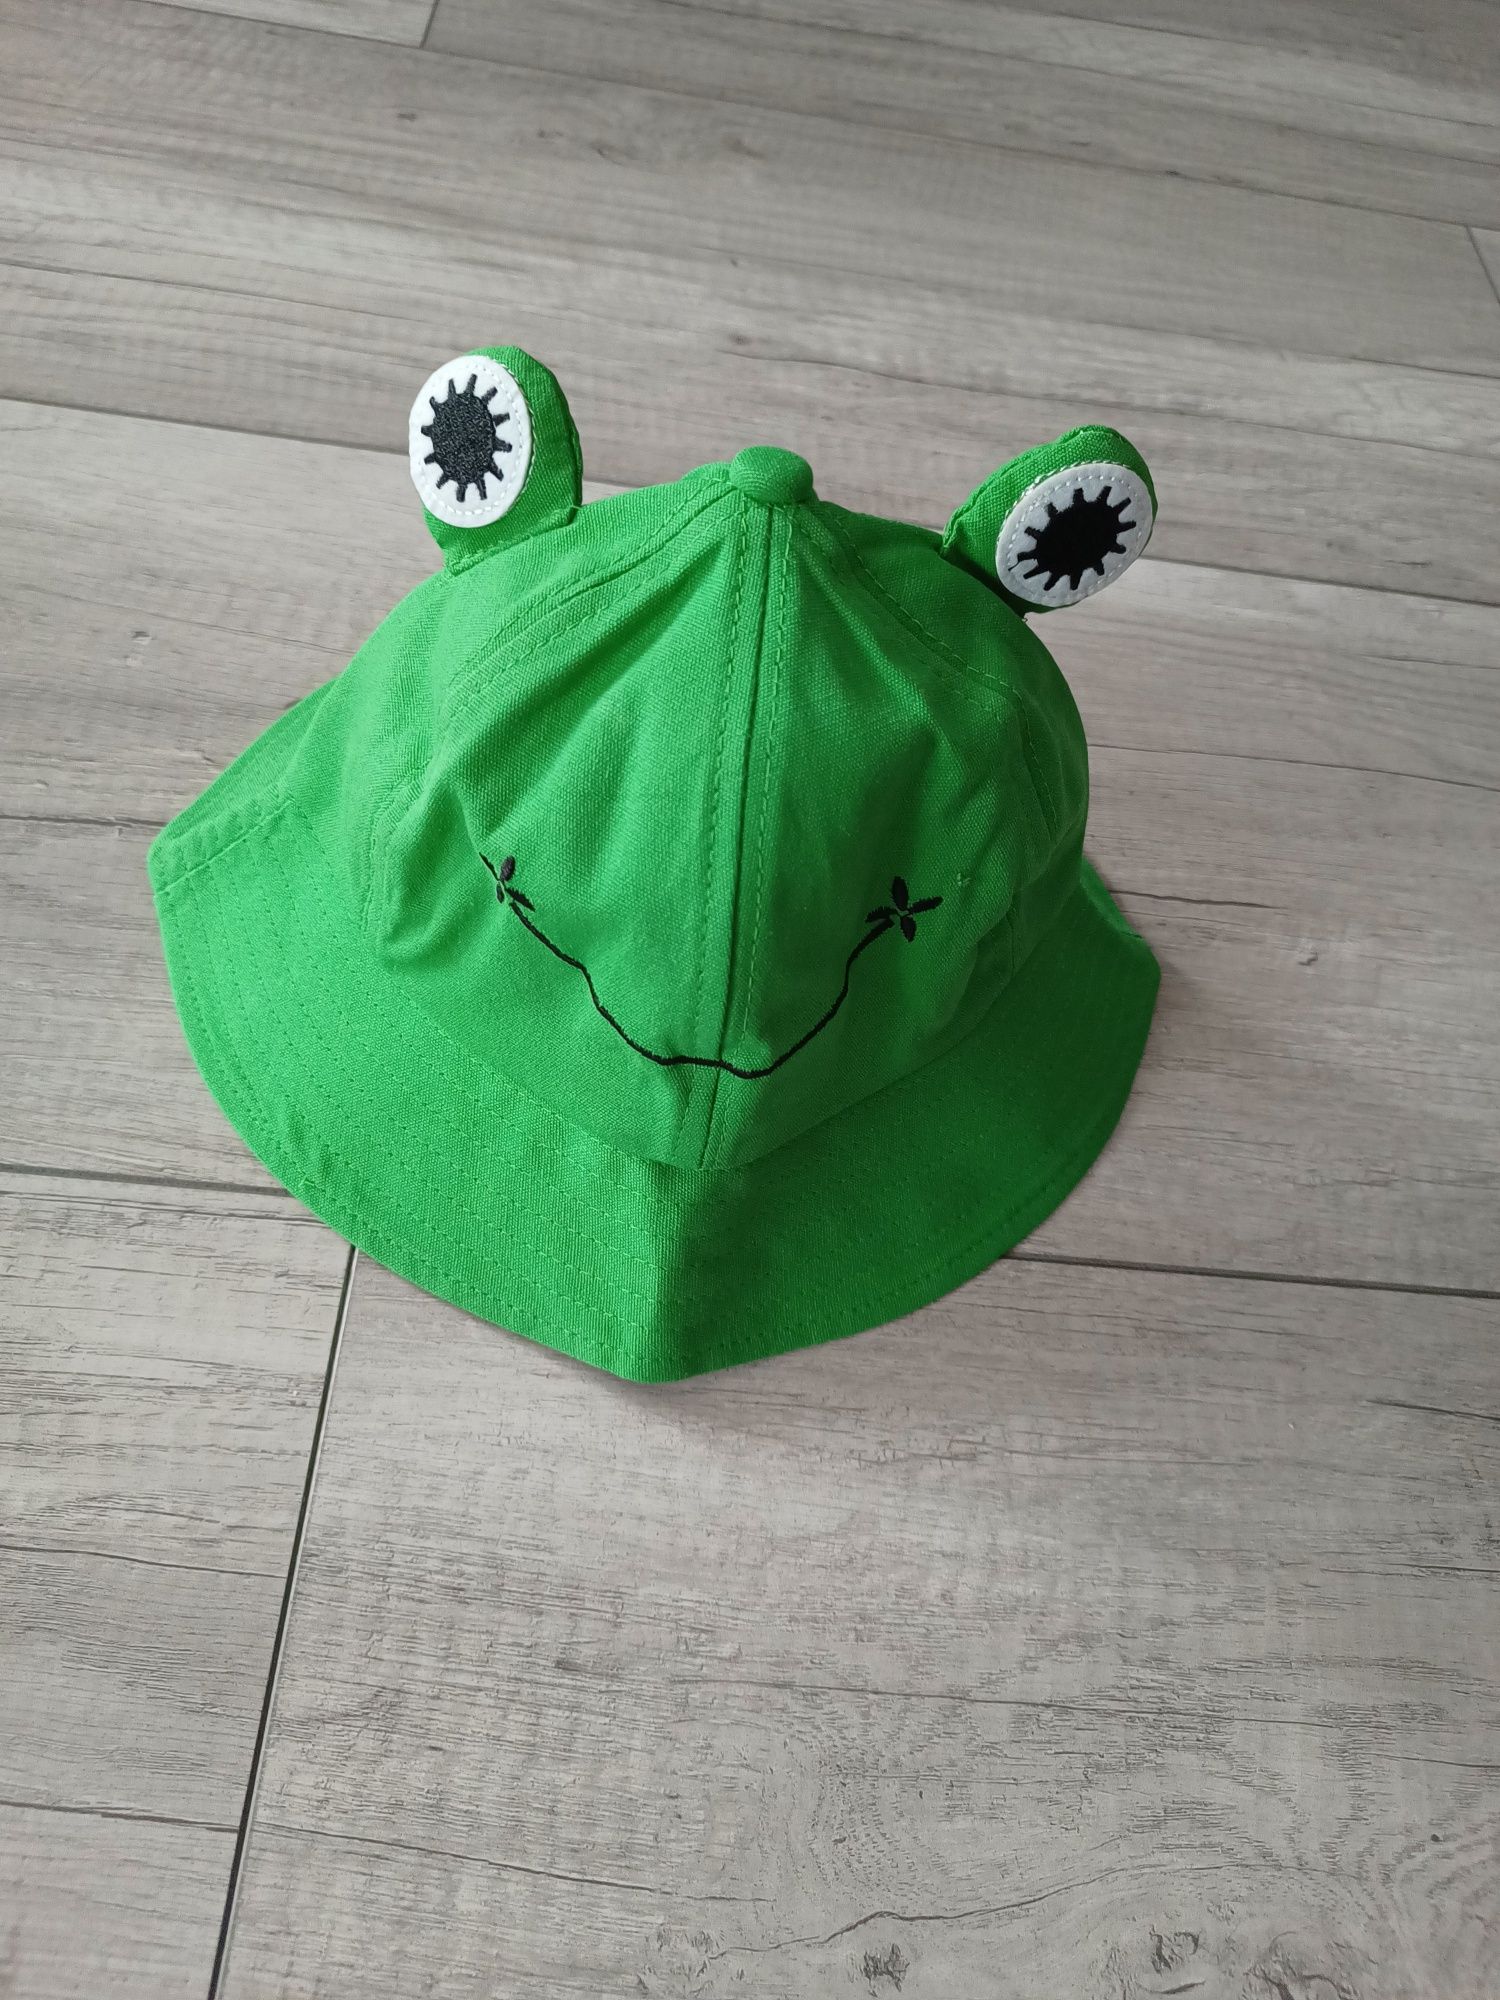 Kapelusz zielony żaba nowy